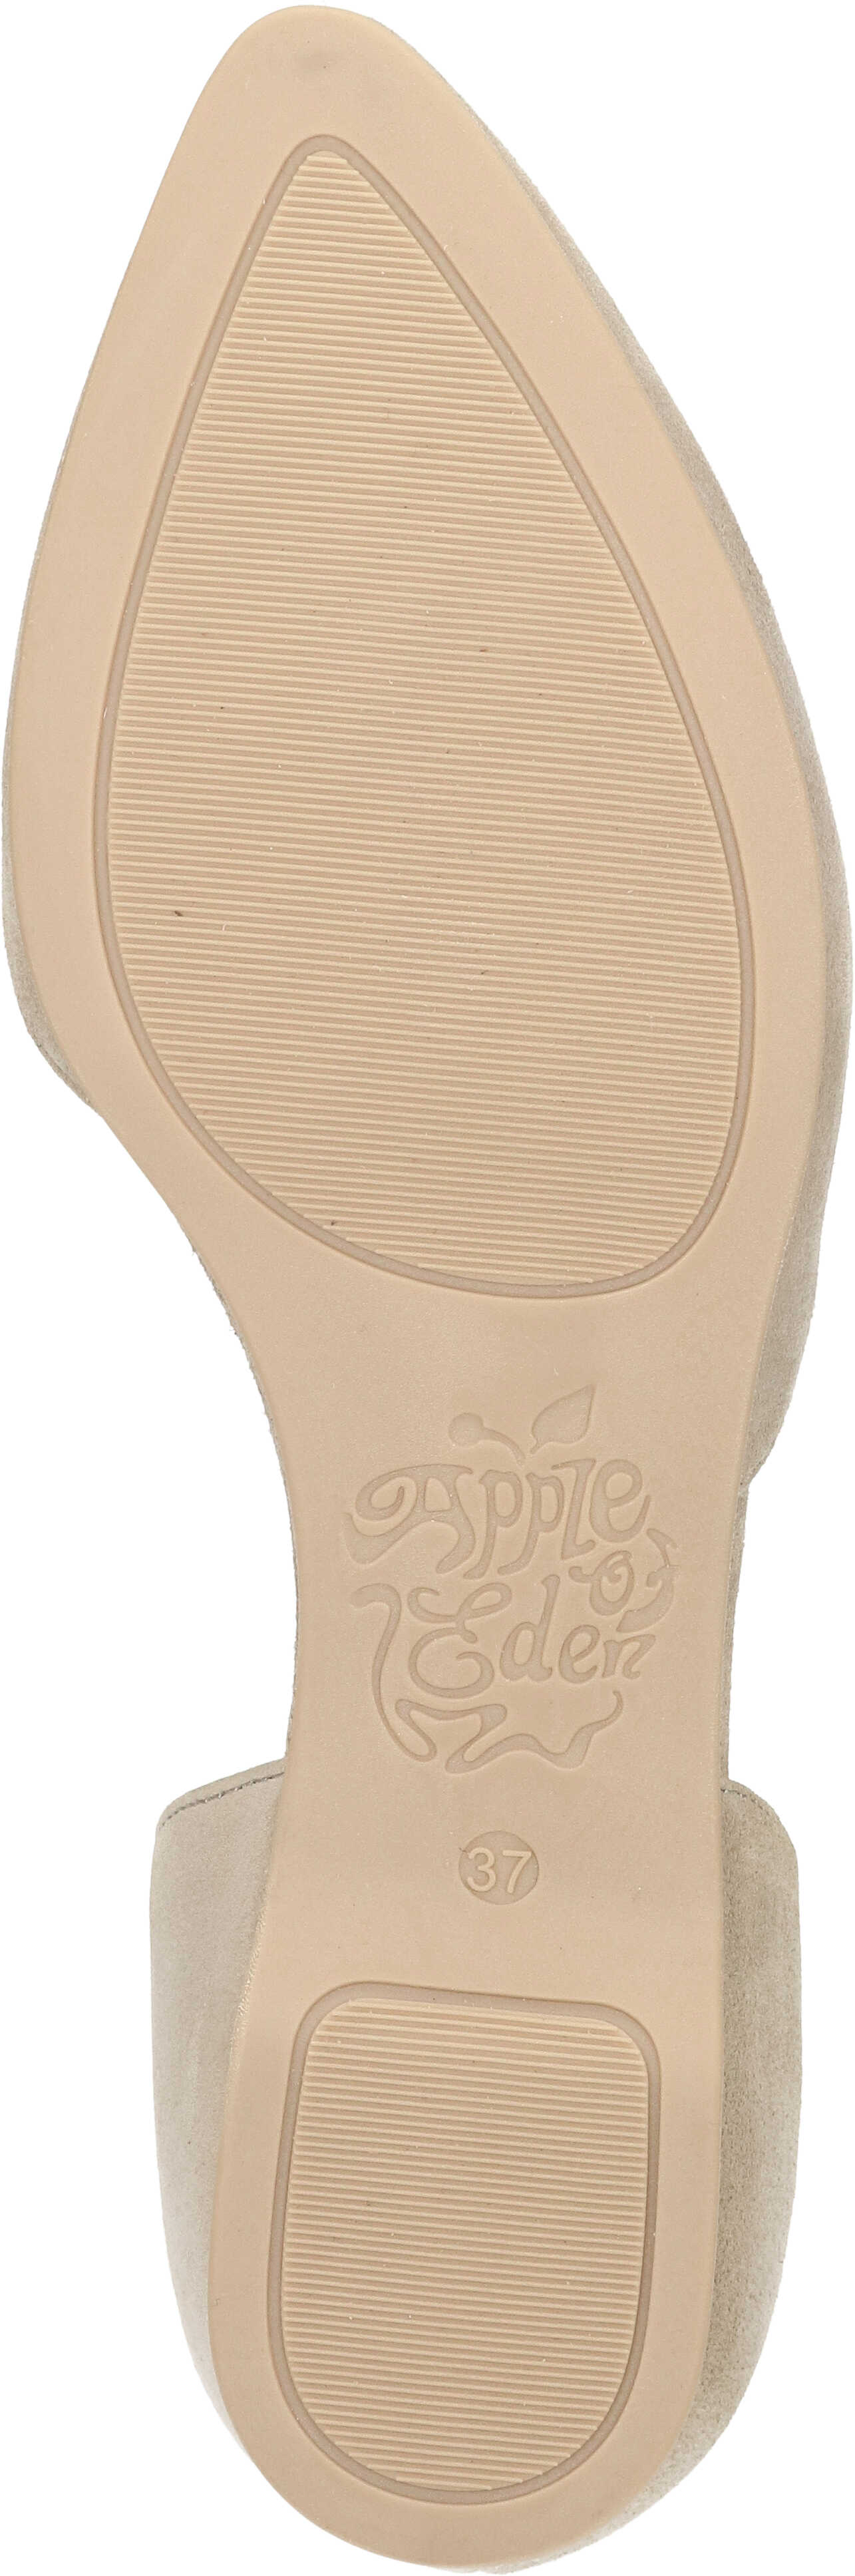 Apple of Eden Slipper